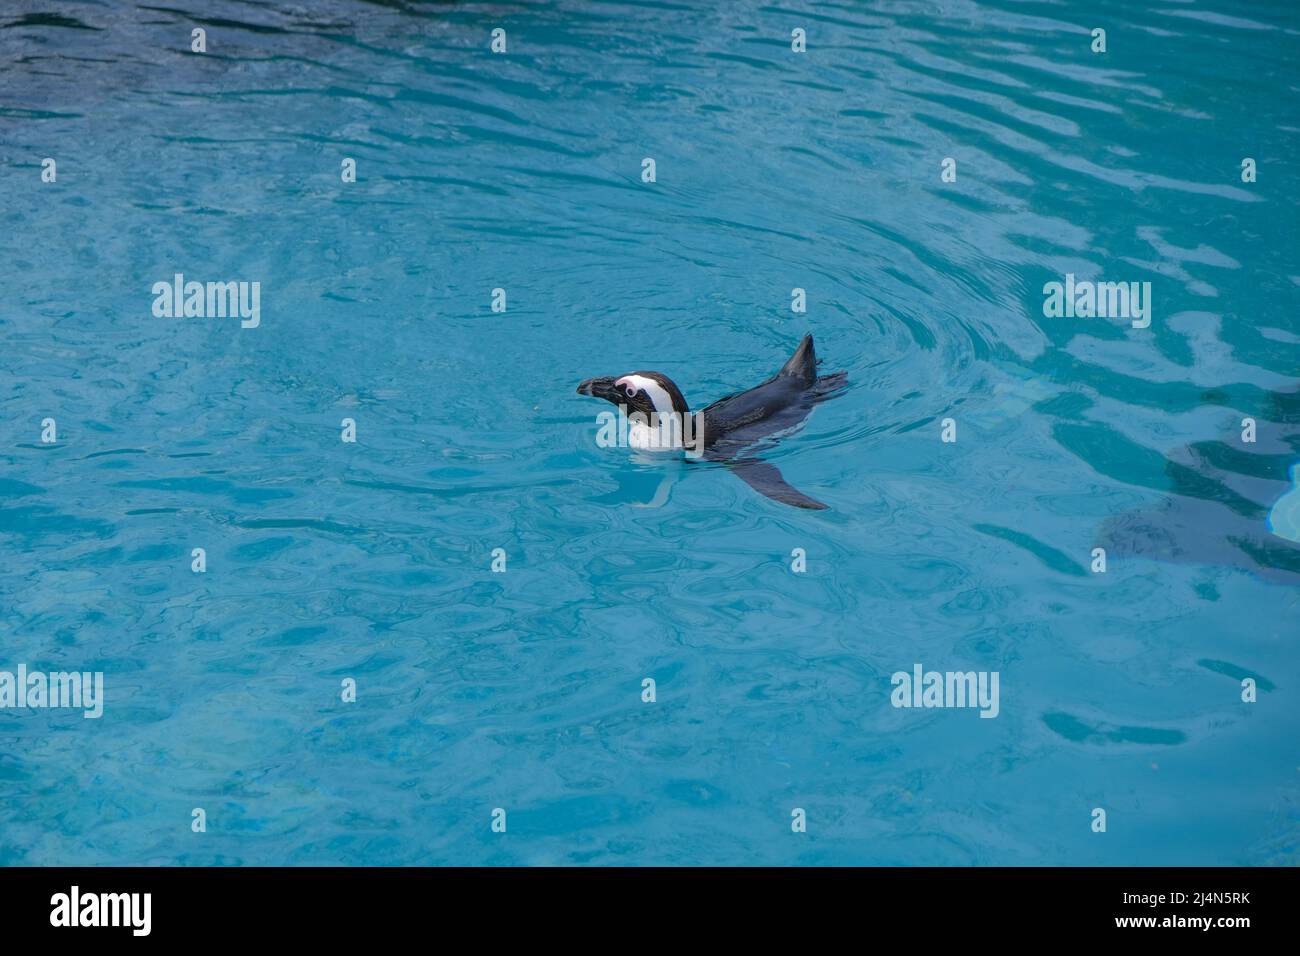 Pingouin unique, couleur noir et blanc du pingouin à l'intérieur de l'étang couleur turqoise. Banque D'Images